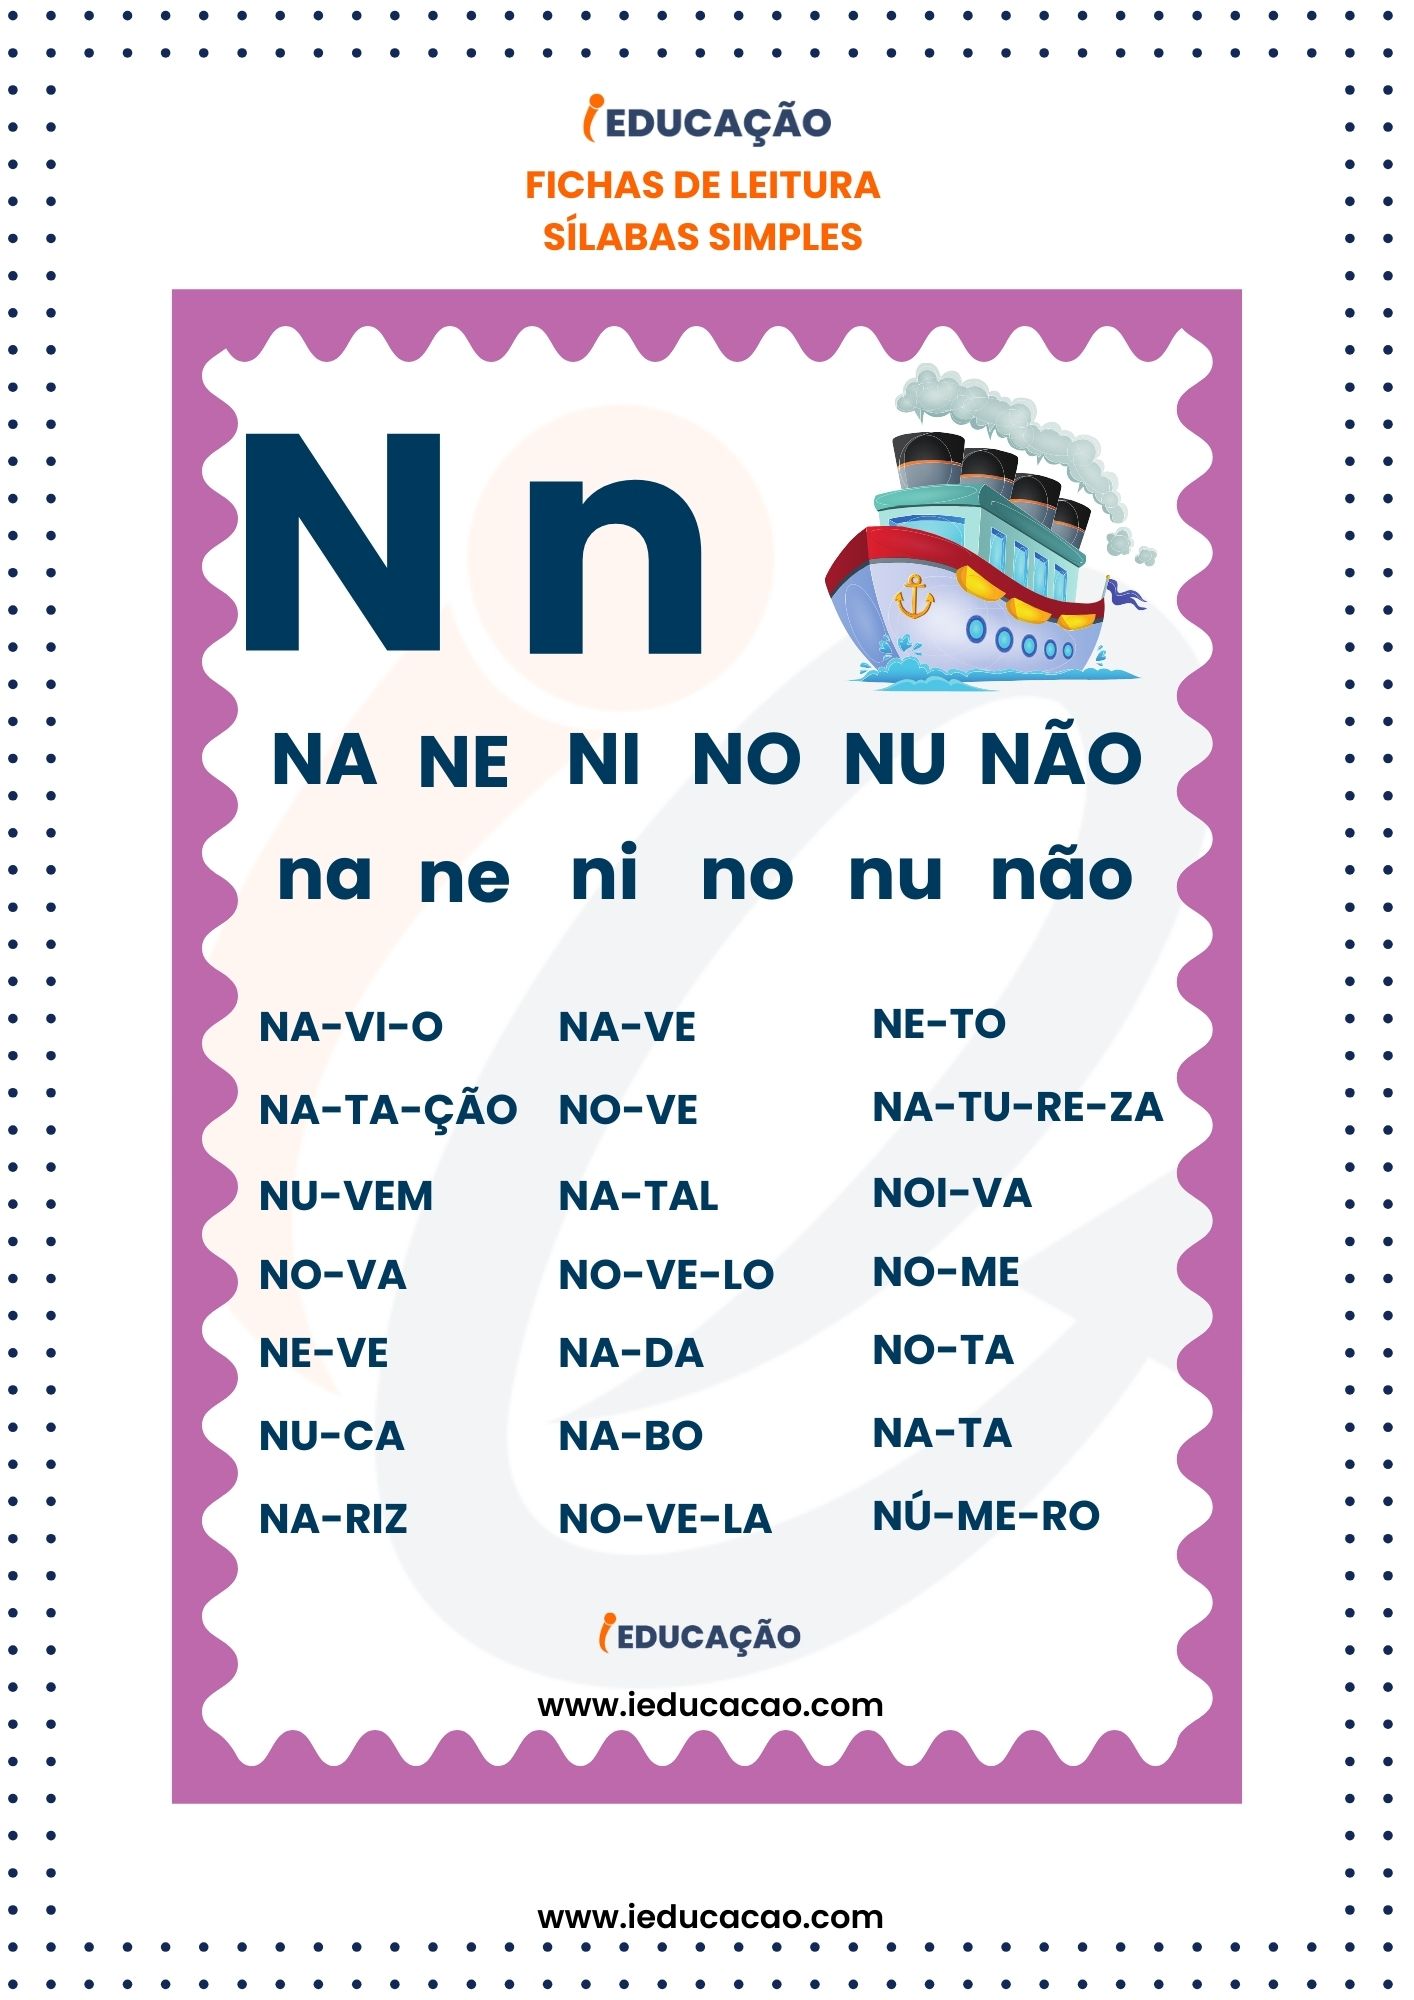 Fichas de Leitura Silabas Simples - silabas NA ne ni no nu